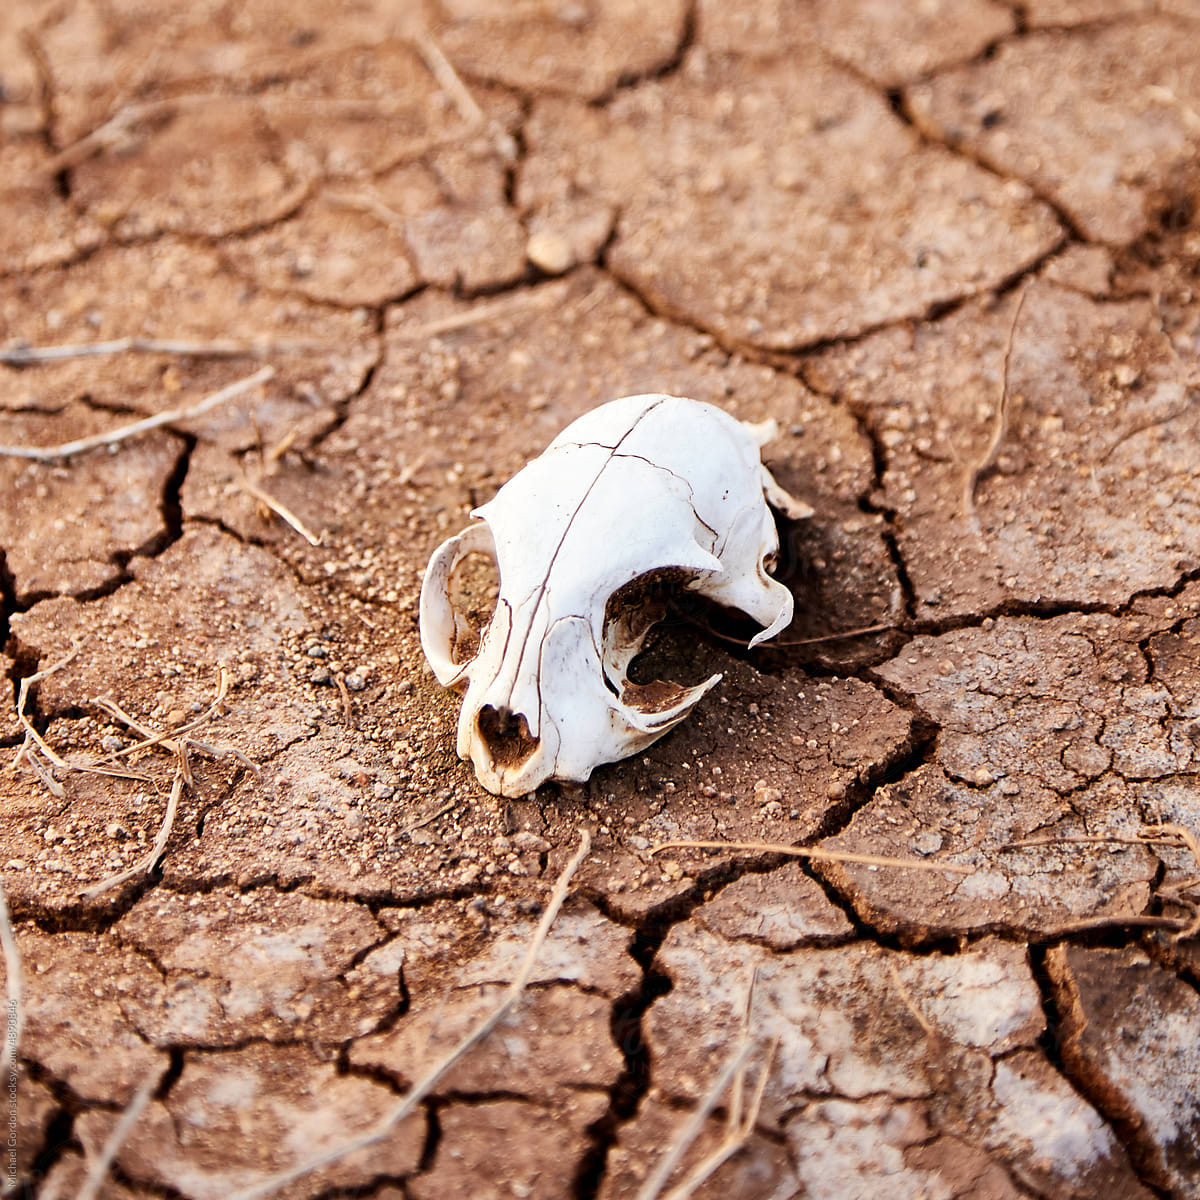 Animal skull on ground in desert